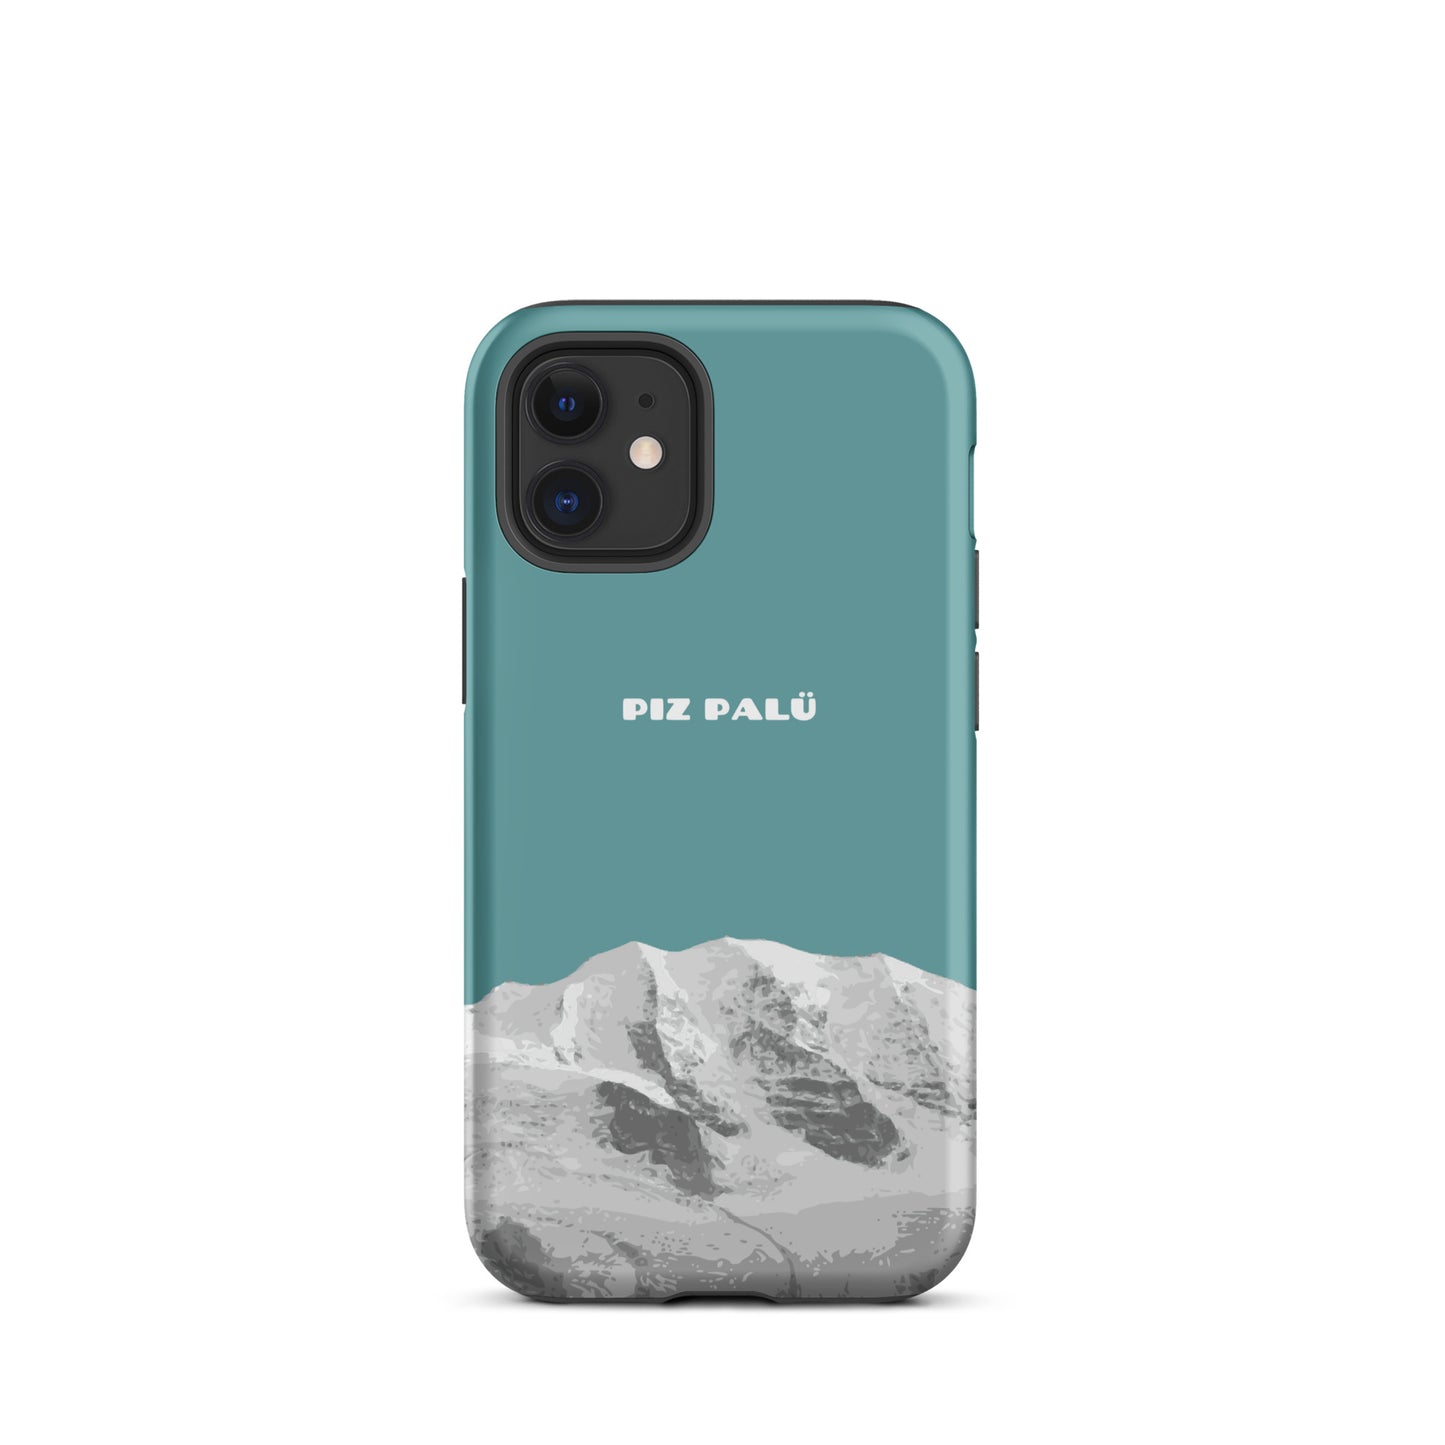 Hülle für das iPhone 12 Mini von Apple in der Farbe Kadettenblau, dass den Piz Palü in Graubünden zeigt.